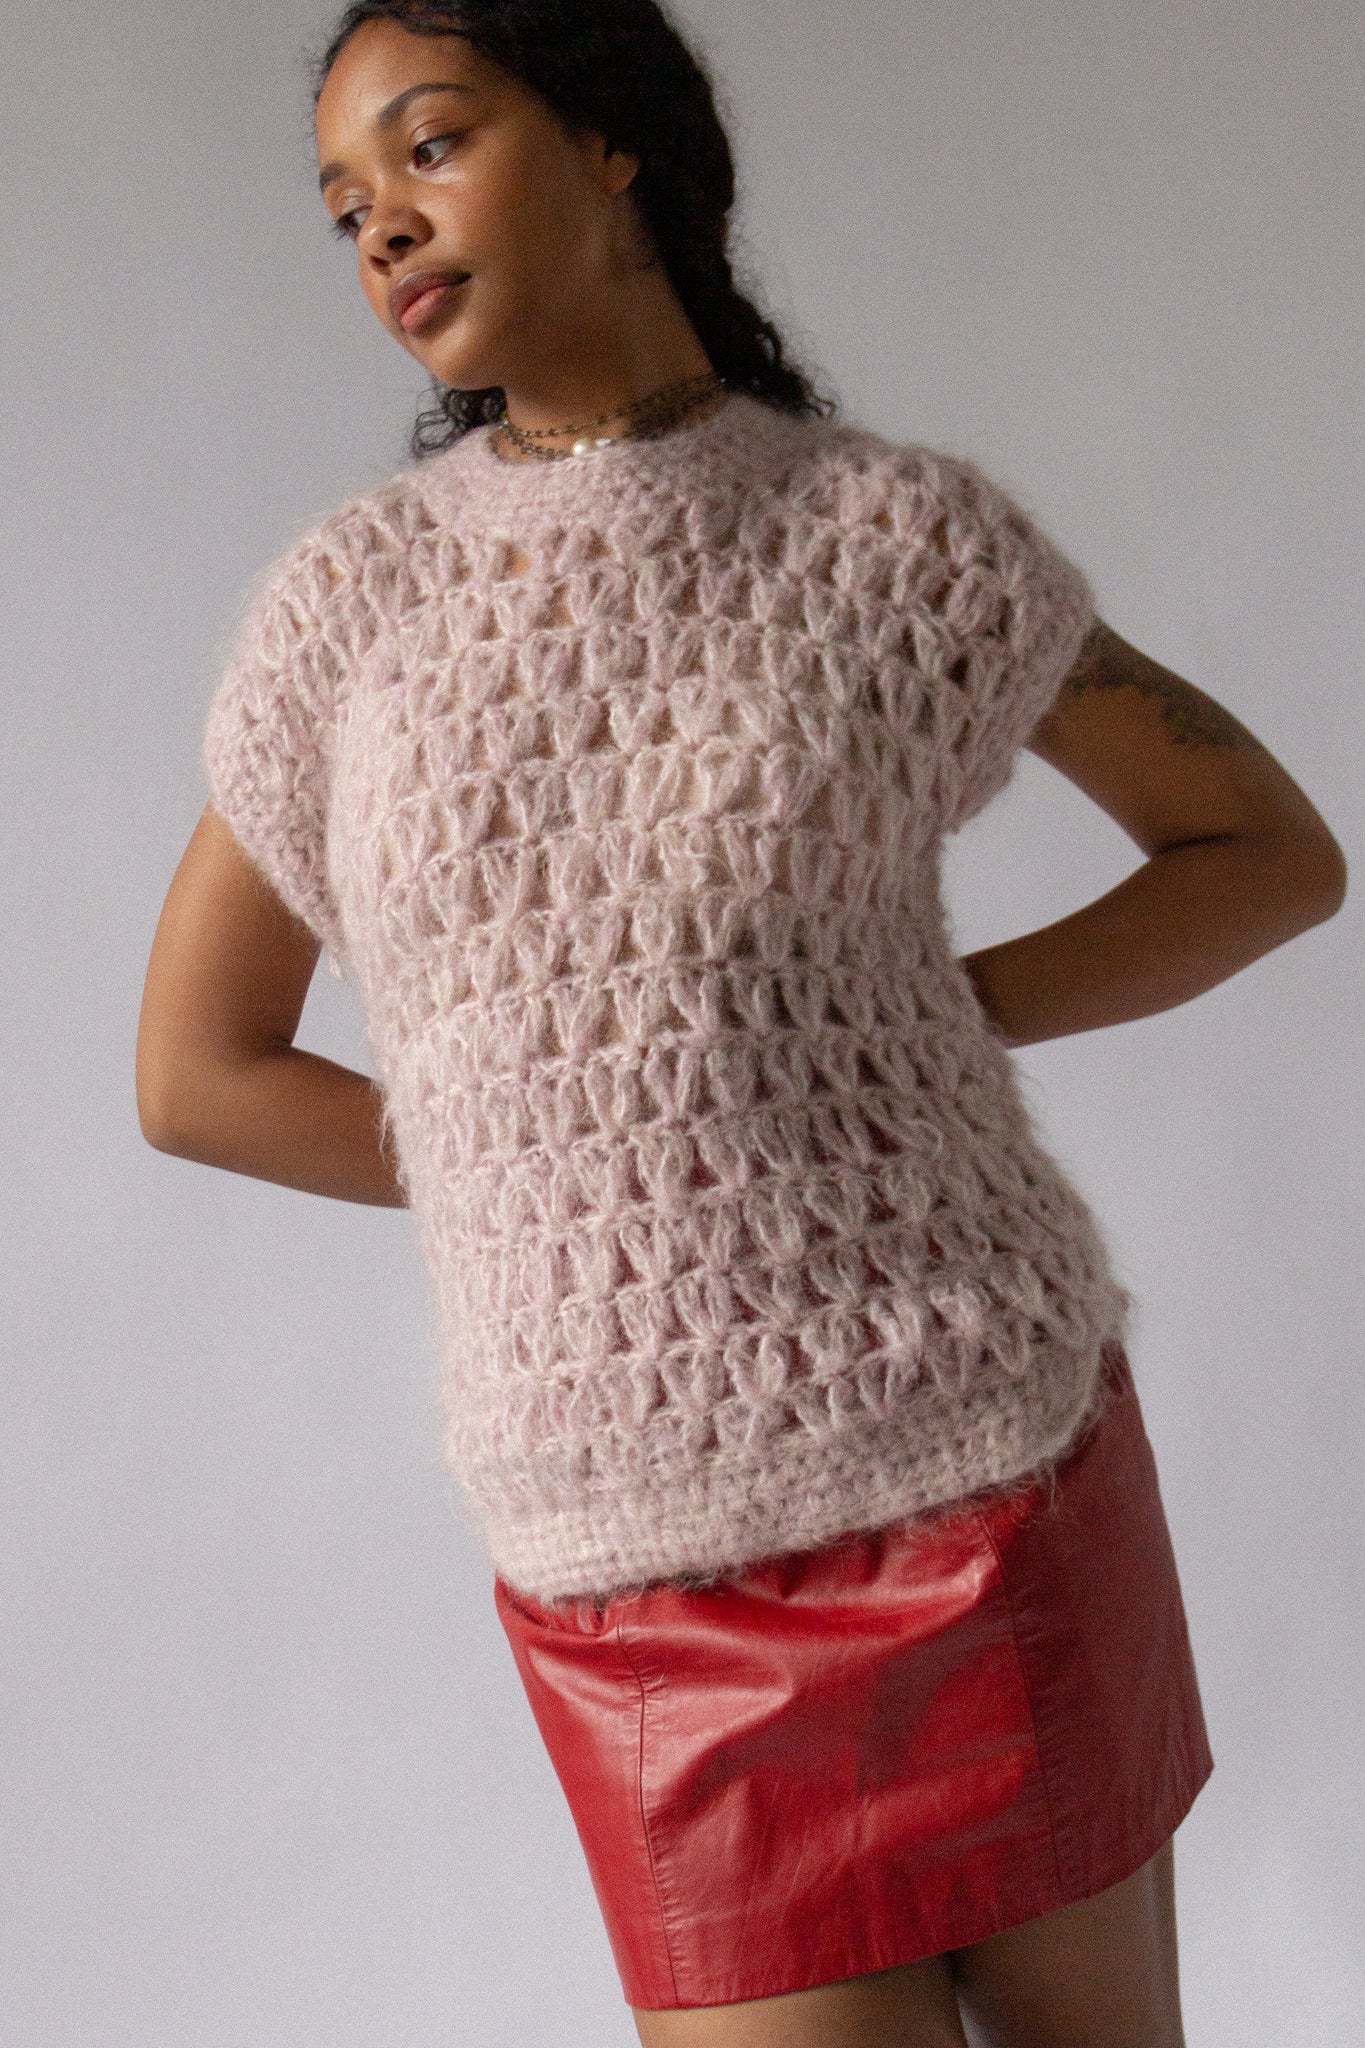 70s Mohair Crochet Cloud Top